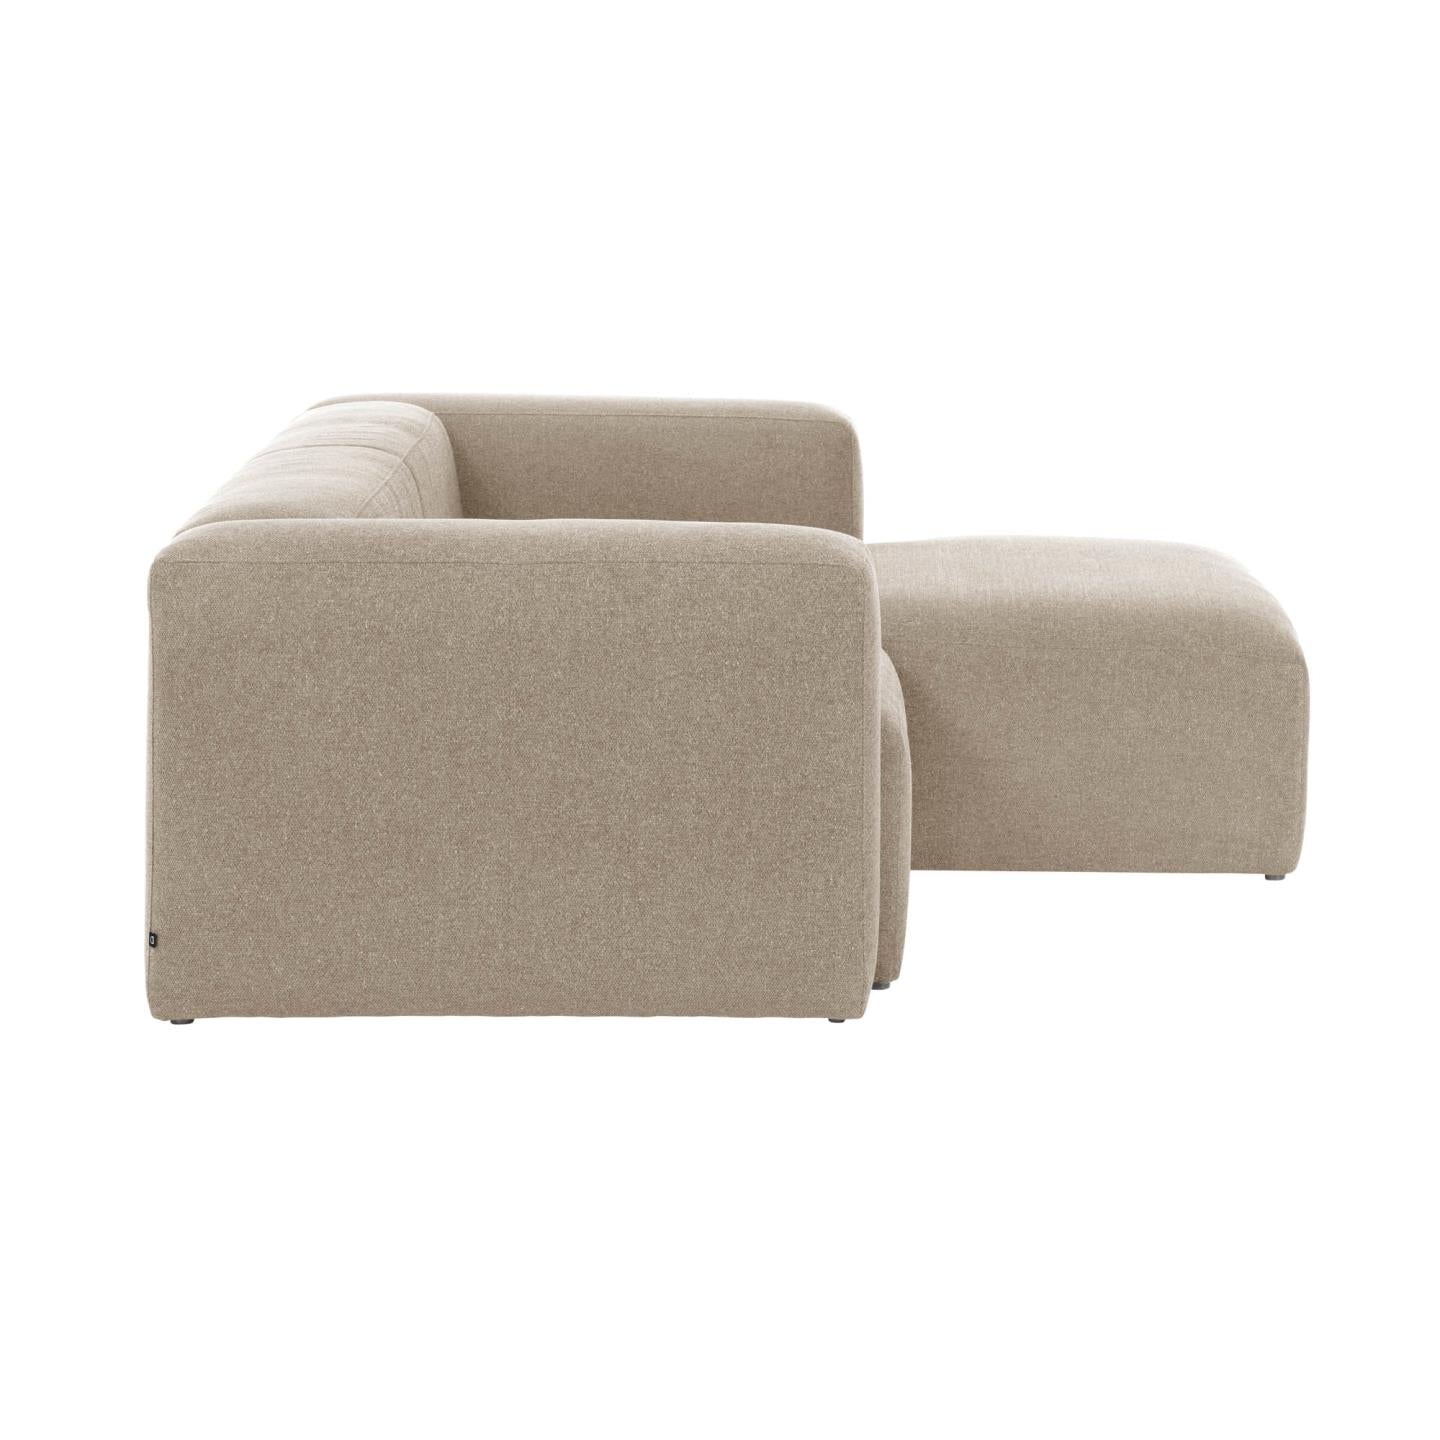 Bloka 2 személyes kanapé jobb oldali fekvőfotellel, bézs színben, 240 cm